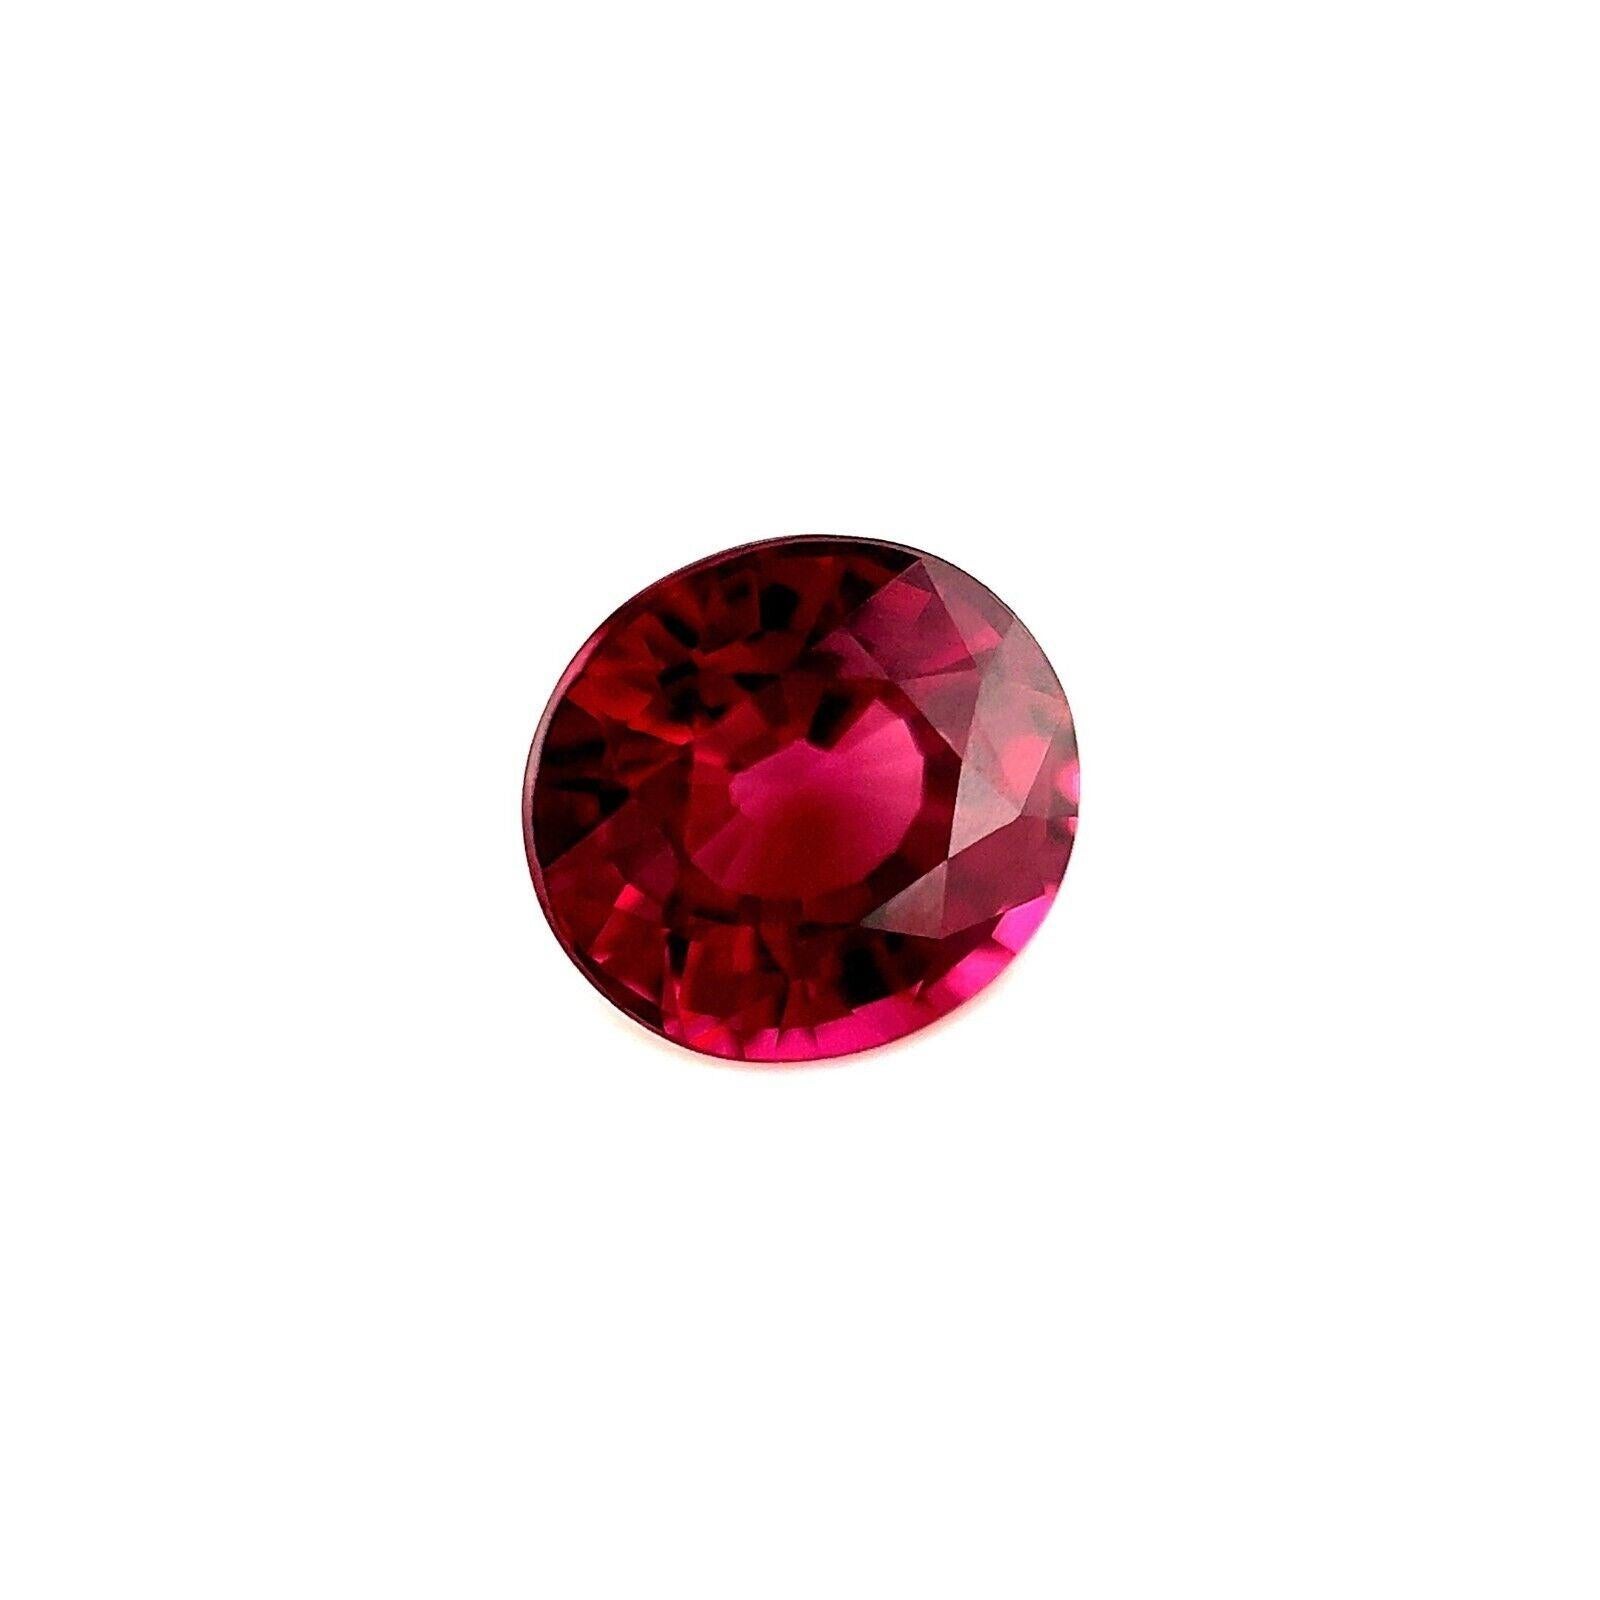 1.89ct Grenat Rhodolite Naturel Rose Violet Taille Ovale Pierre Libre 7.2x6.6mm VS

Fine pierre précieuse naturelle grenat rhodolite.
1,89 carat avec une belle couleur rose pourpre vif et une excellente clarté, une pierre précieuse très propre. VS
A